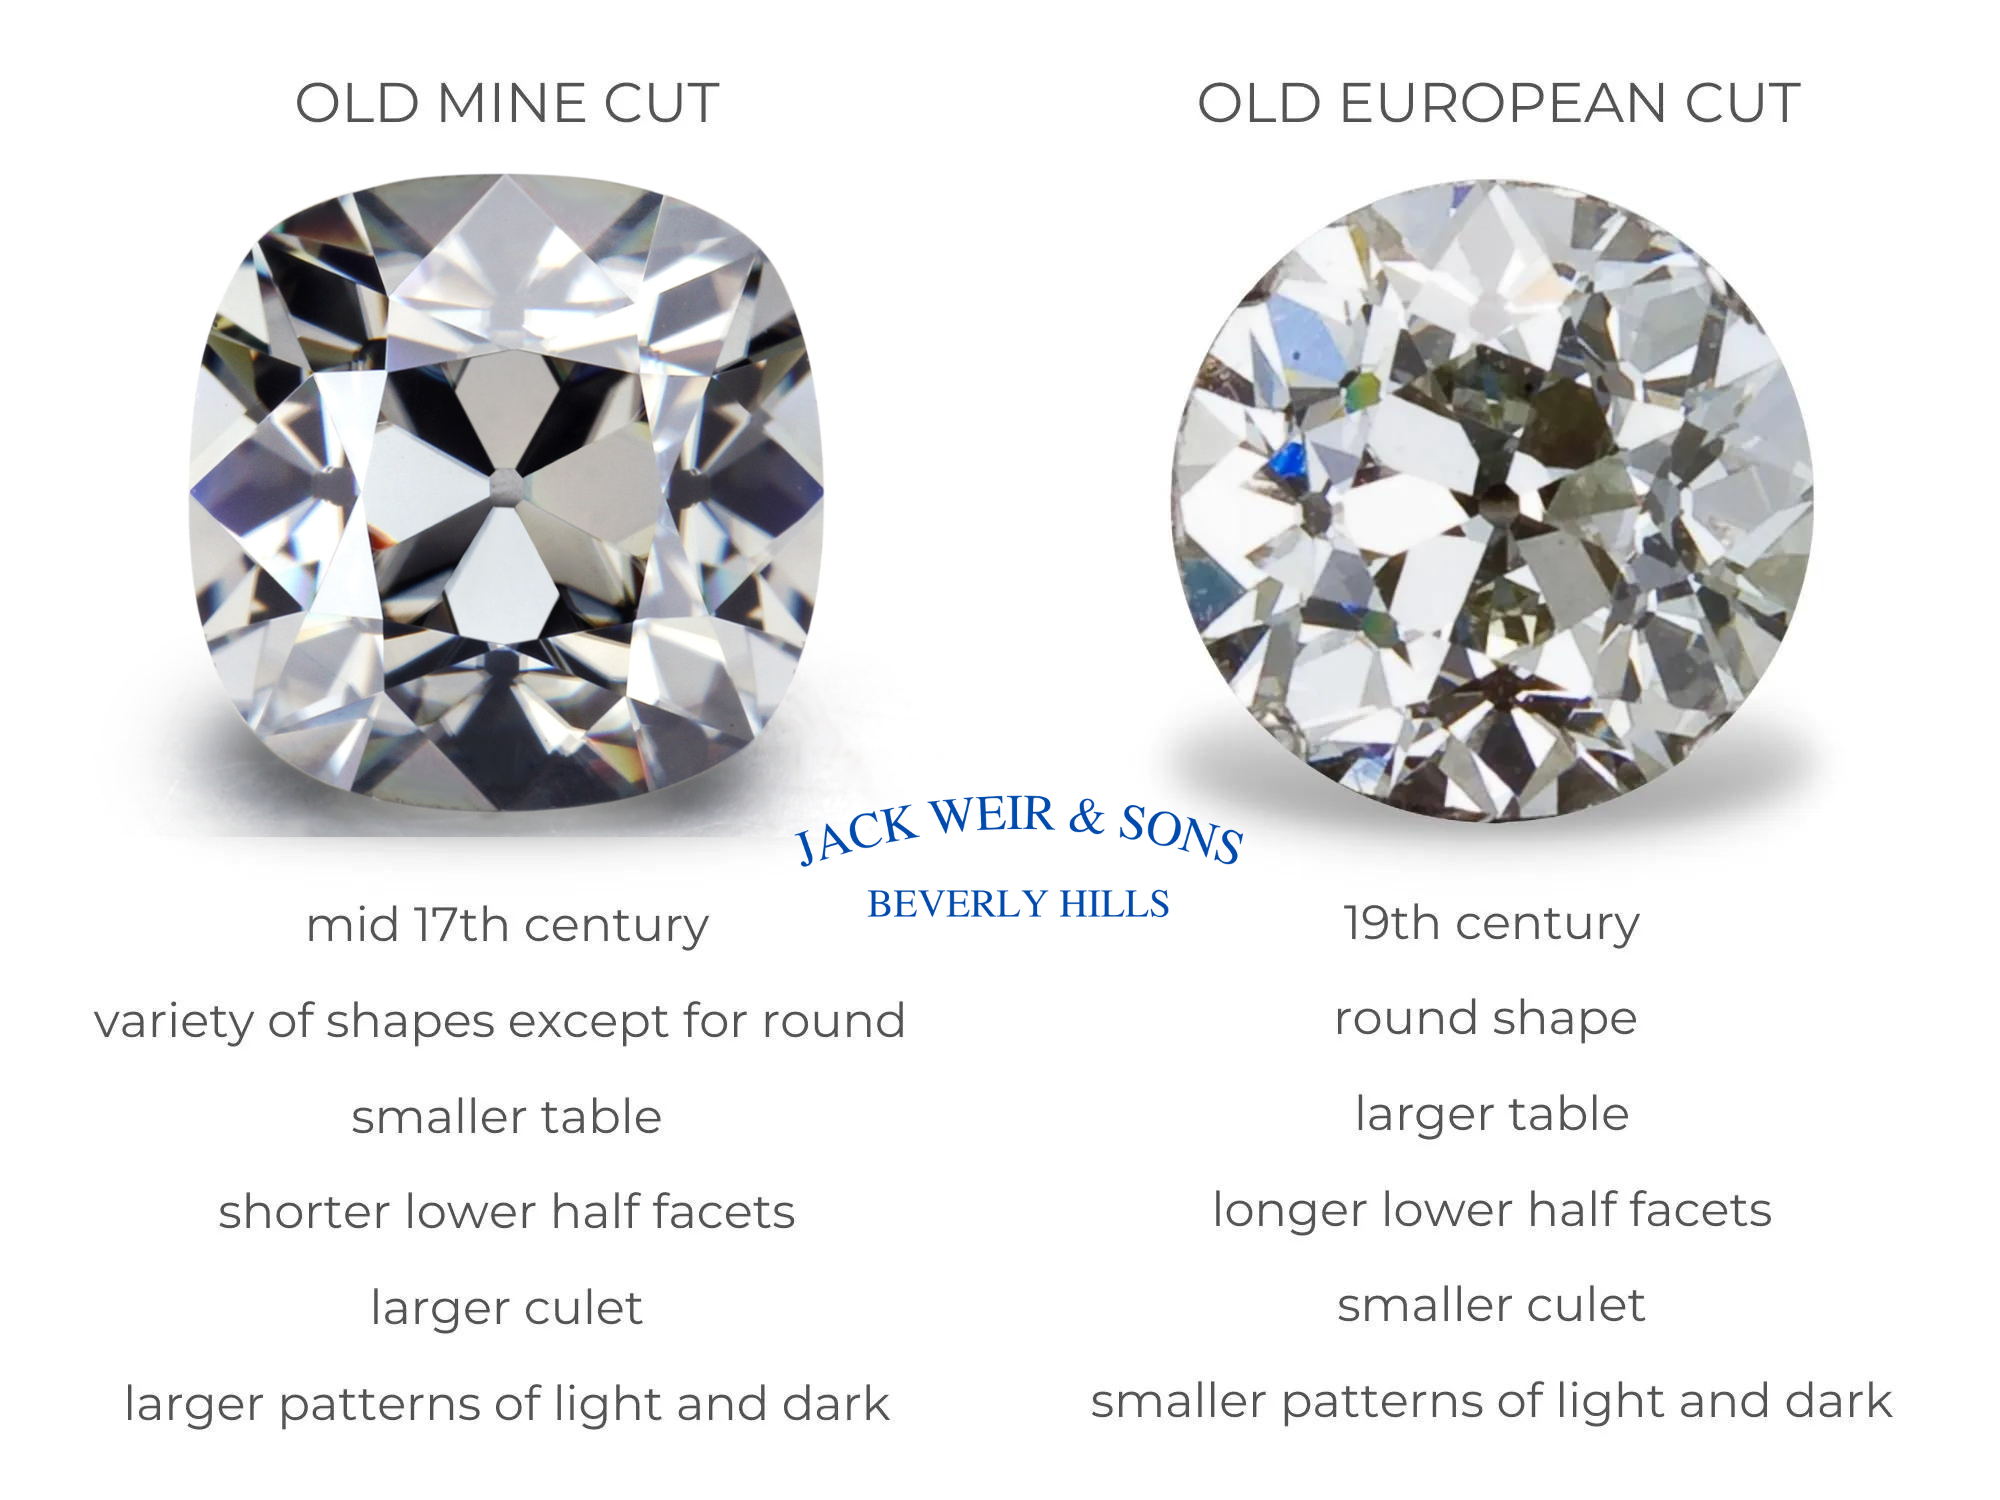 老矿式切工钻石和老欧式切工钻石并排特写，比较两种切工。老矿式切工钻石起源于 17 世纪中叶，除了圆形之外还有多种形状，具有较小的桌面、较短的下半刻面、较大的底尖以及较大的浅色和深色图案。老欧洲切工起源于 19 世纪，是我们今天所知的明亮式圆形切工的前身，具有更大的桌面、更长的下半刻面、更小的底尖以及更小的浅色和深色图案。